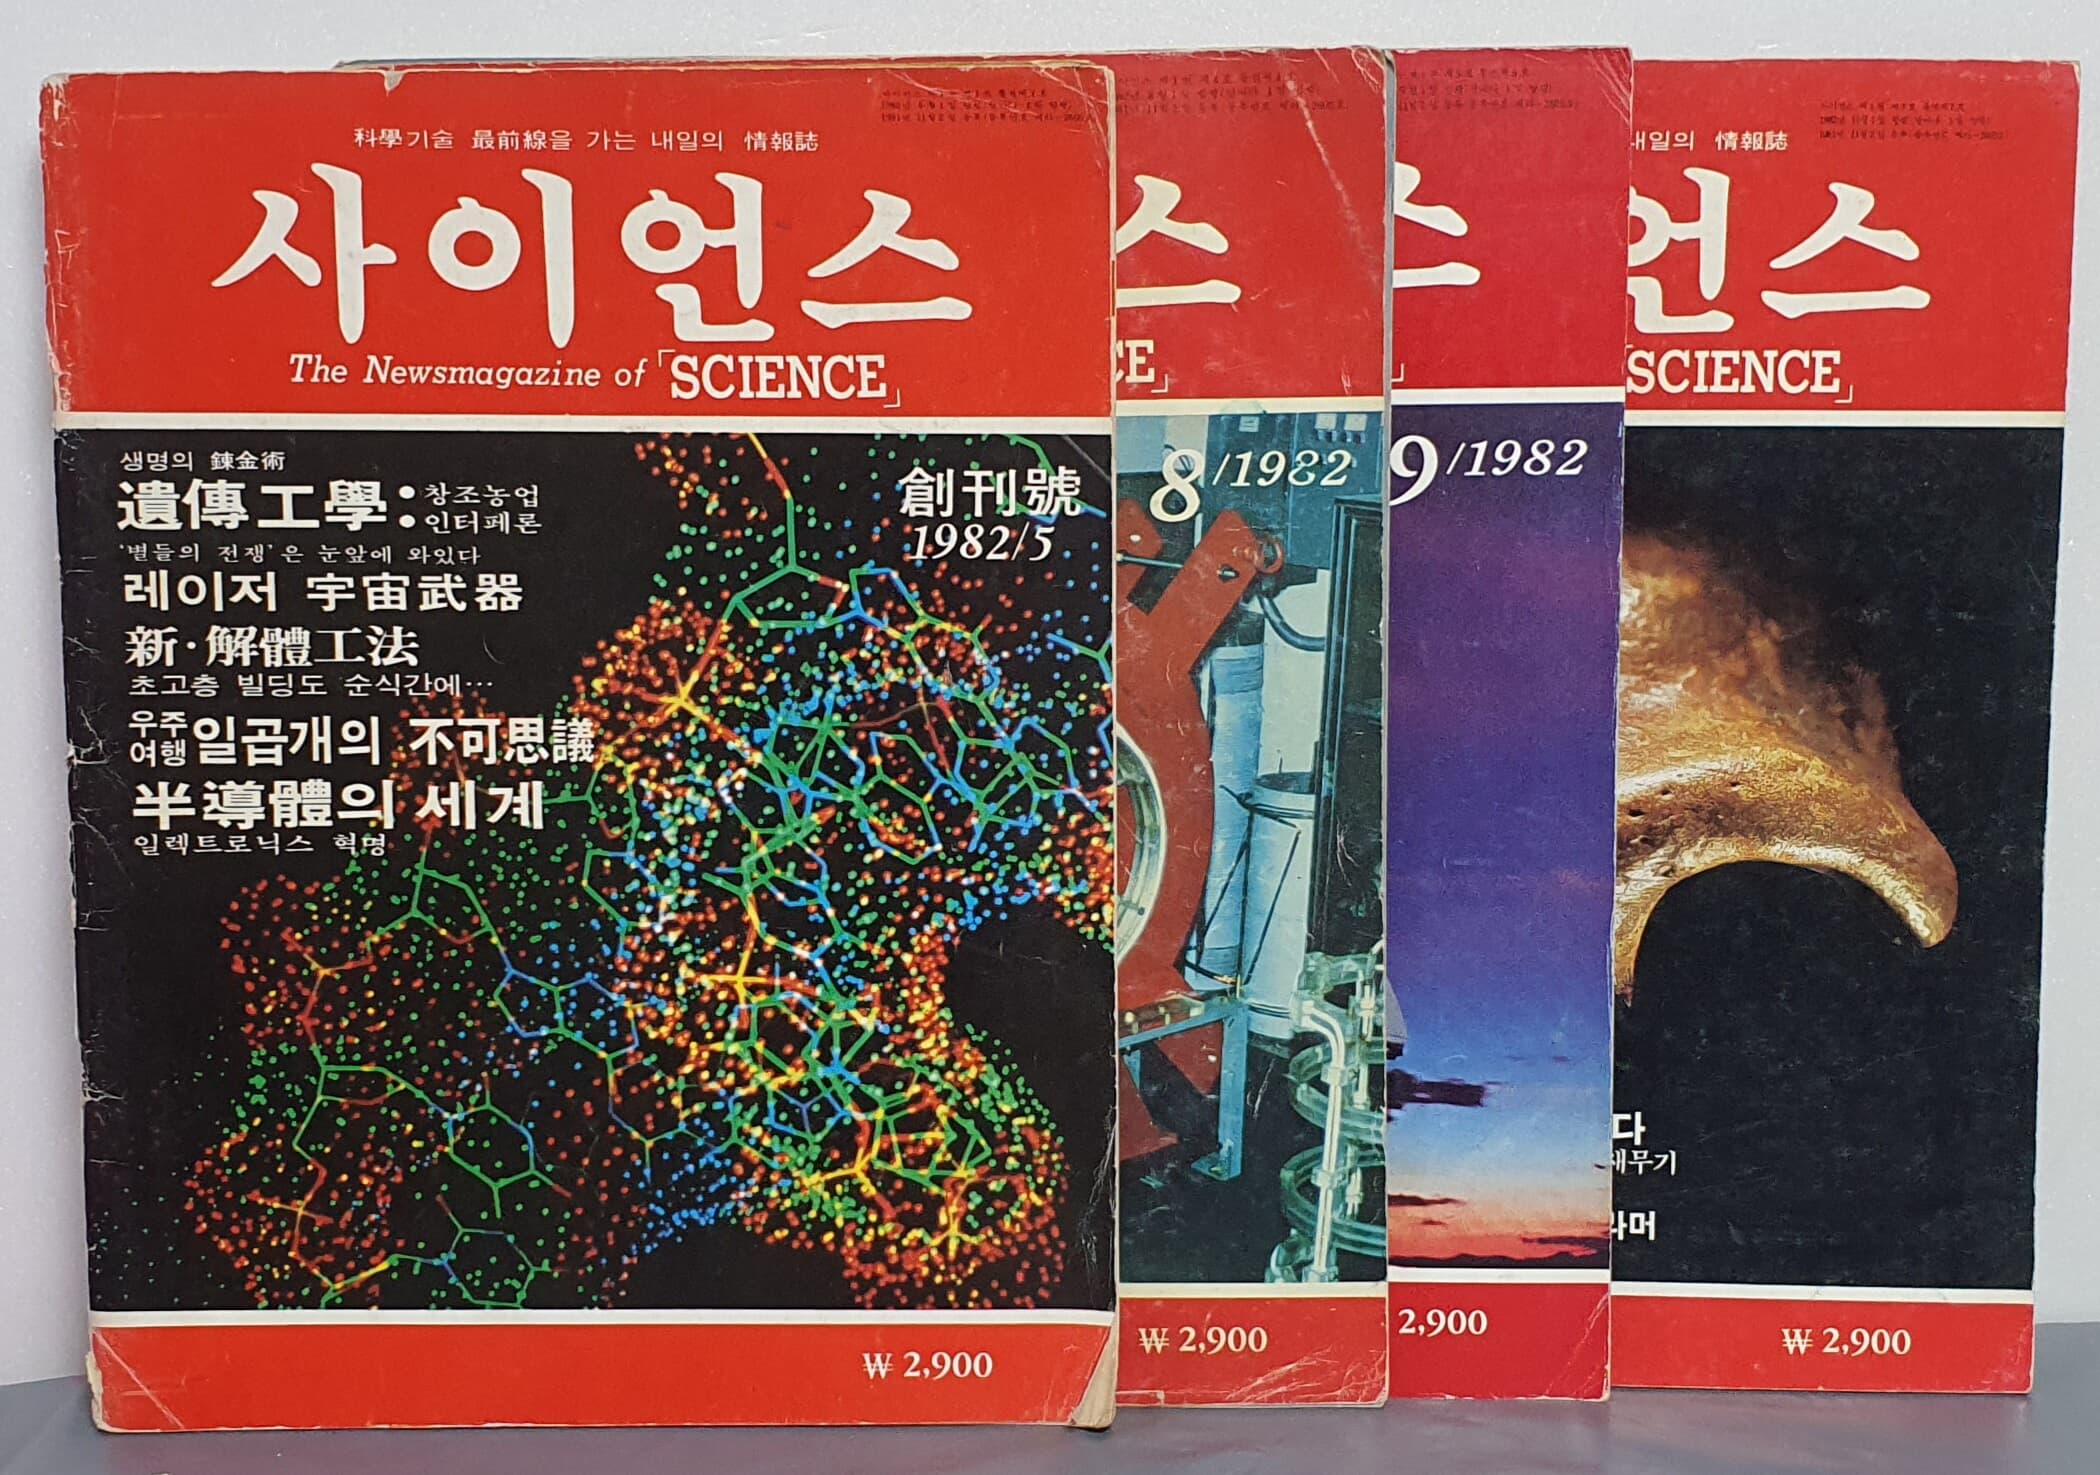 월간 사이언스 SCIENCE - 창간호 1985년 5월호/1982년 8월호/1982년 9월호/1982년 11월호 - (4권)